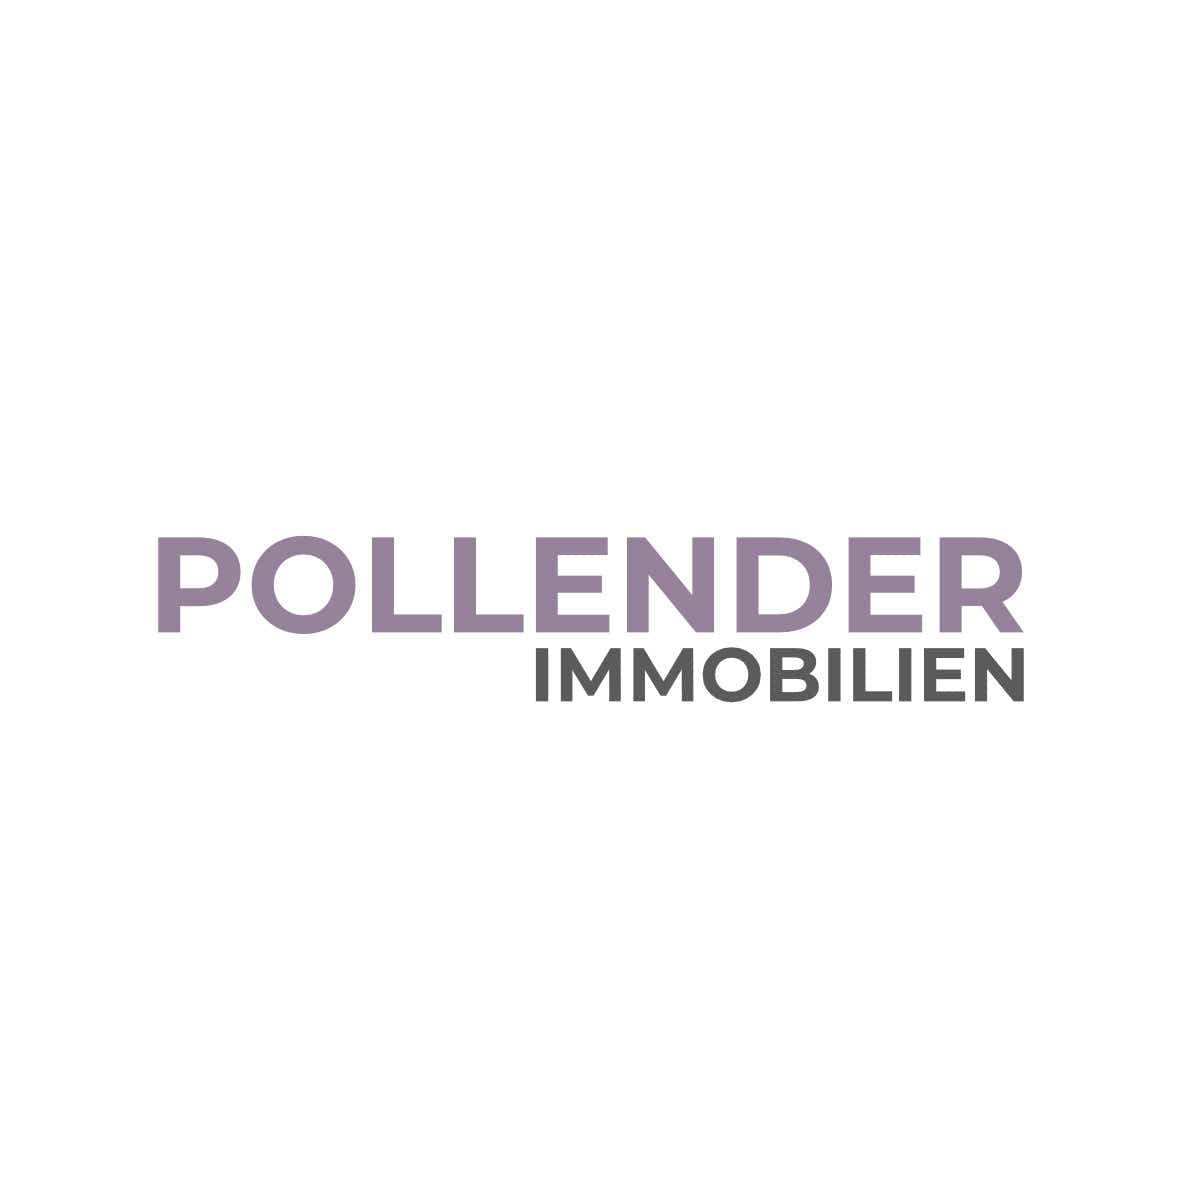 (c) Pollender-immobilien.de